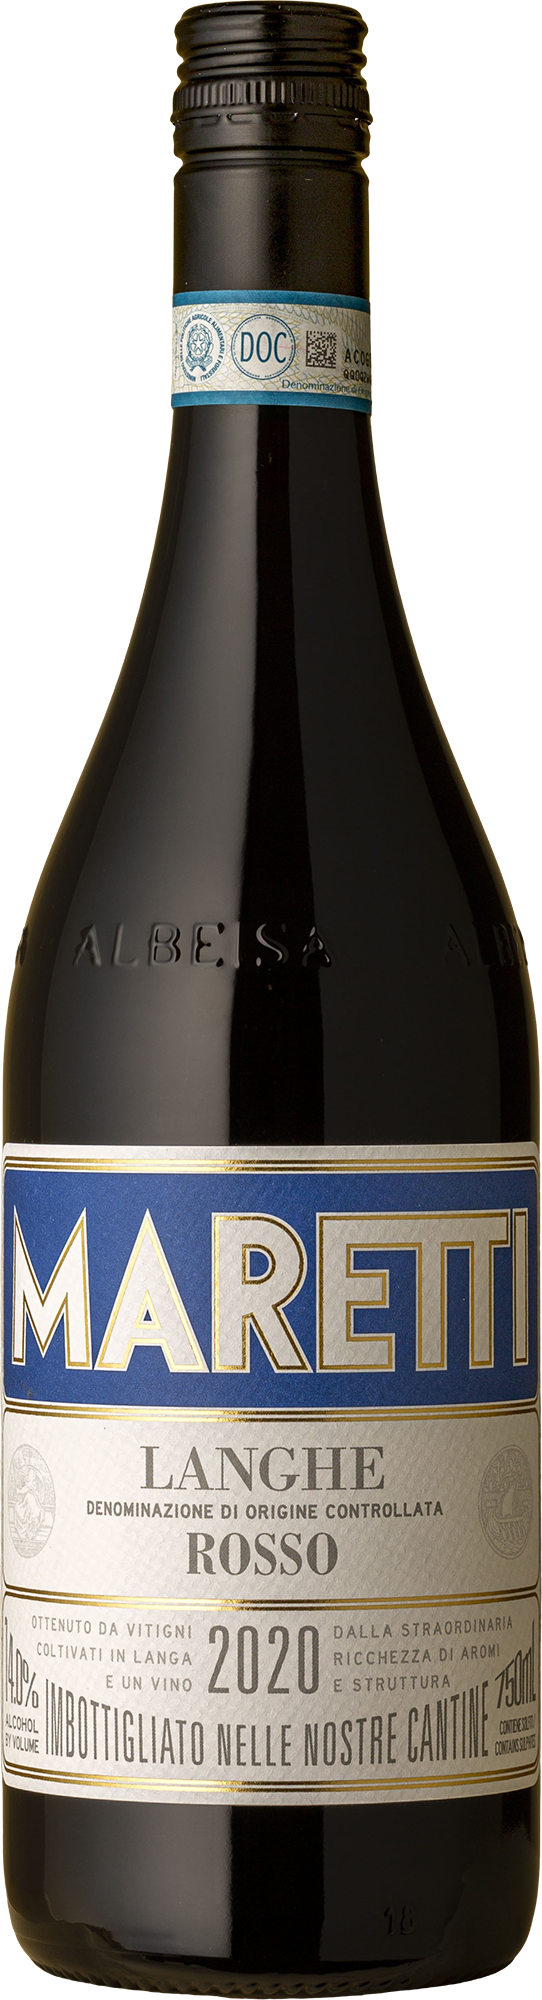 Maretti - Rosso Nebbiolo / Barbera 2020 Red Wine